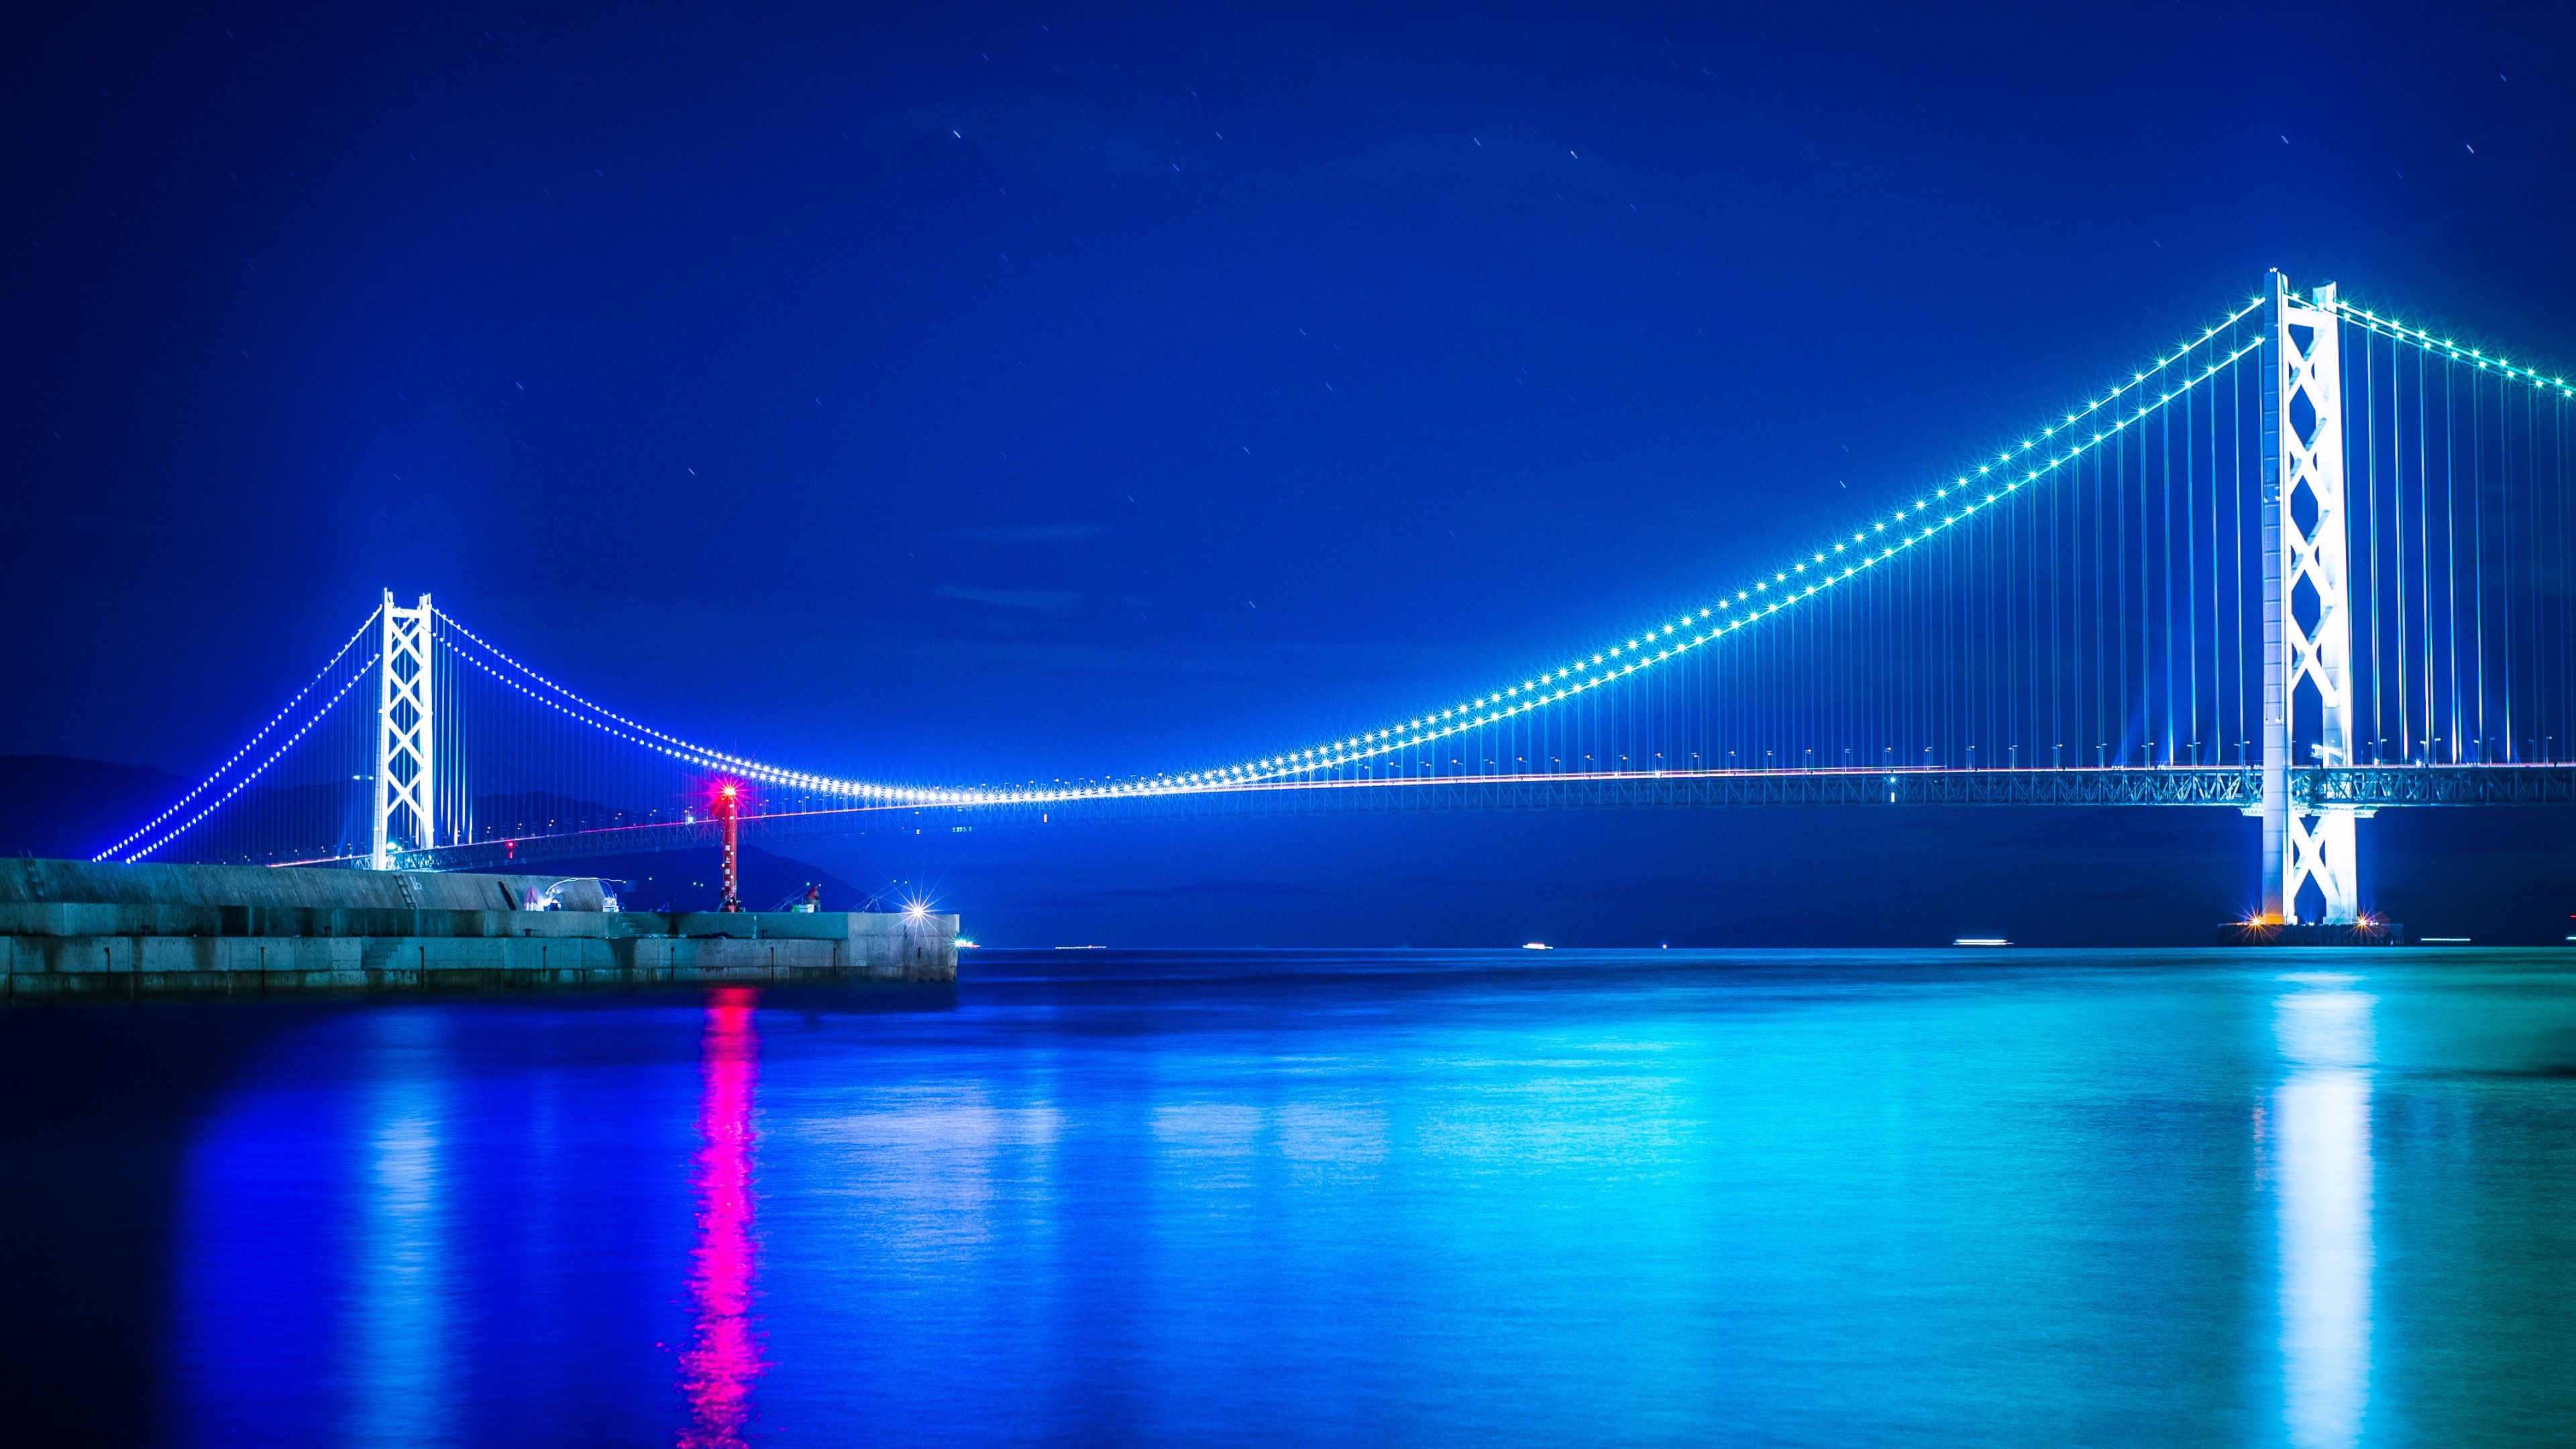 The akashi kaikyo suspension bridge lit at night wide wallpaper 3840x2160